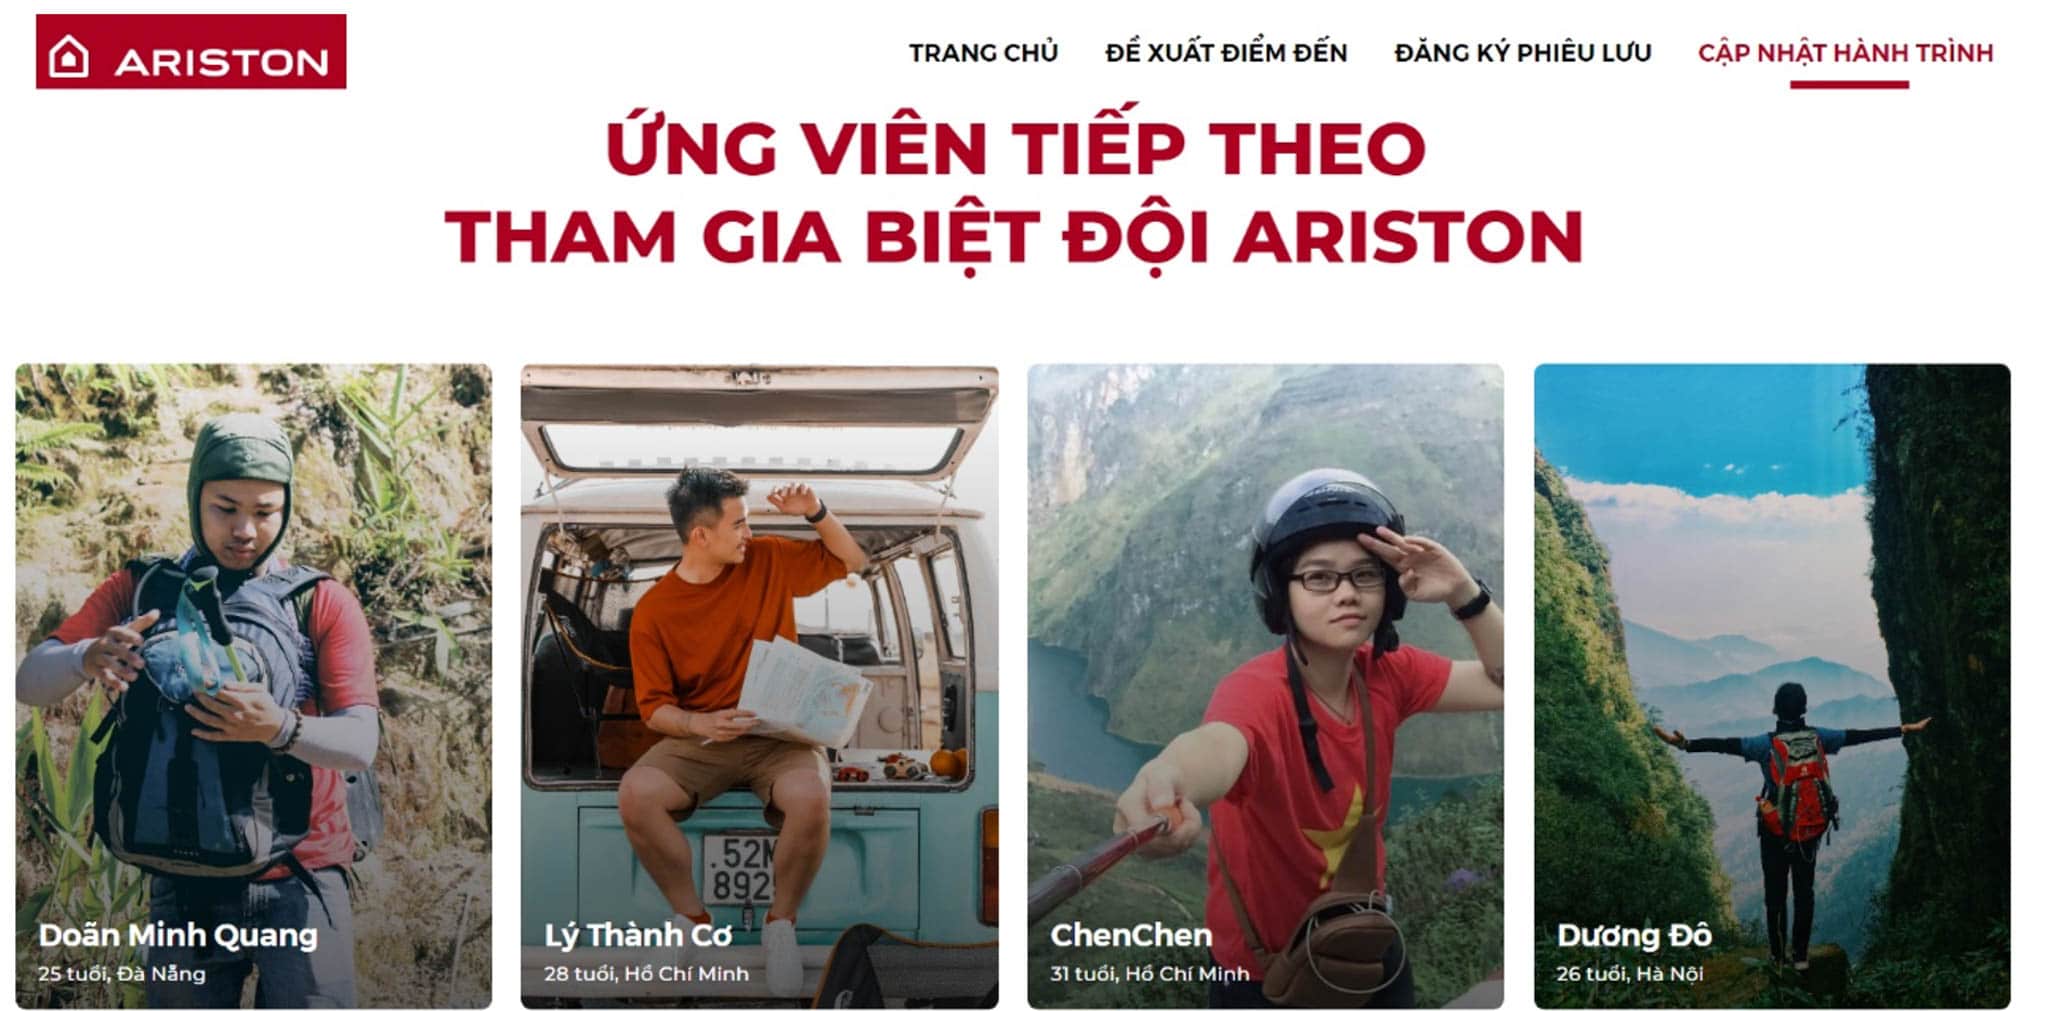 Biệt đội Ariston hé lộ thông tin đầu tiên trong hành trình xuyên Việt